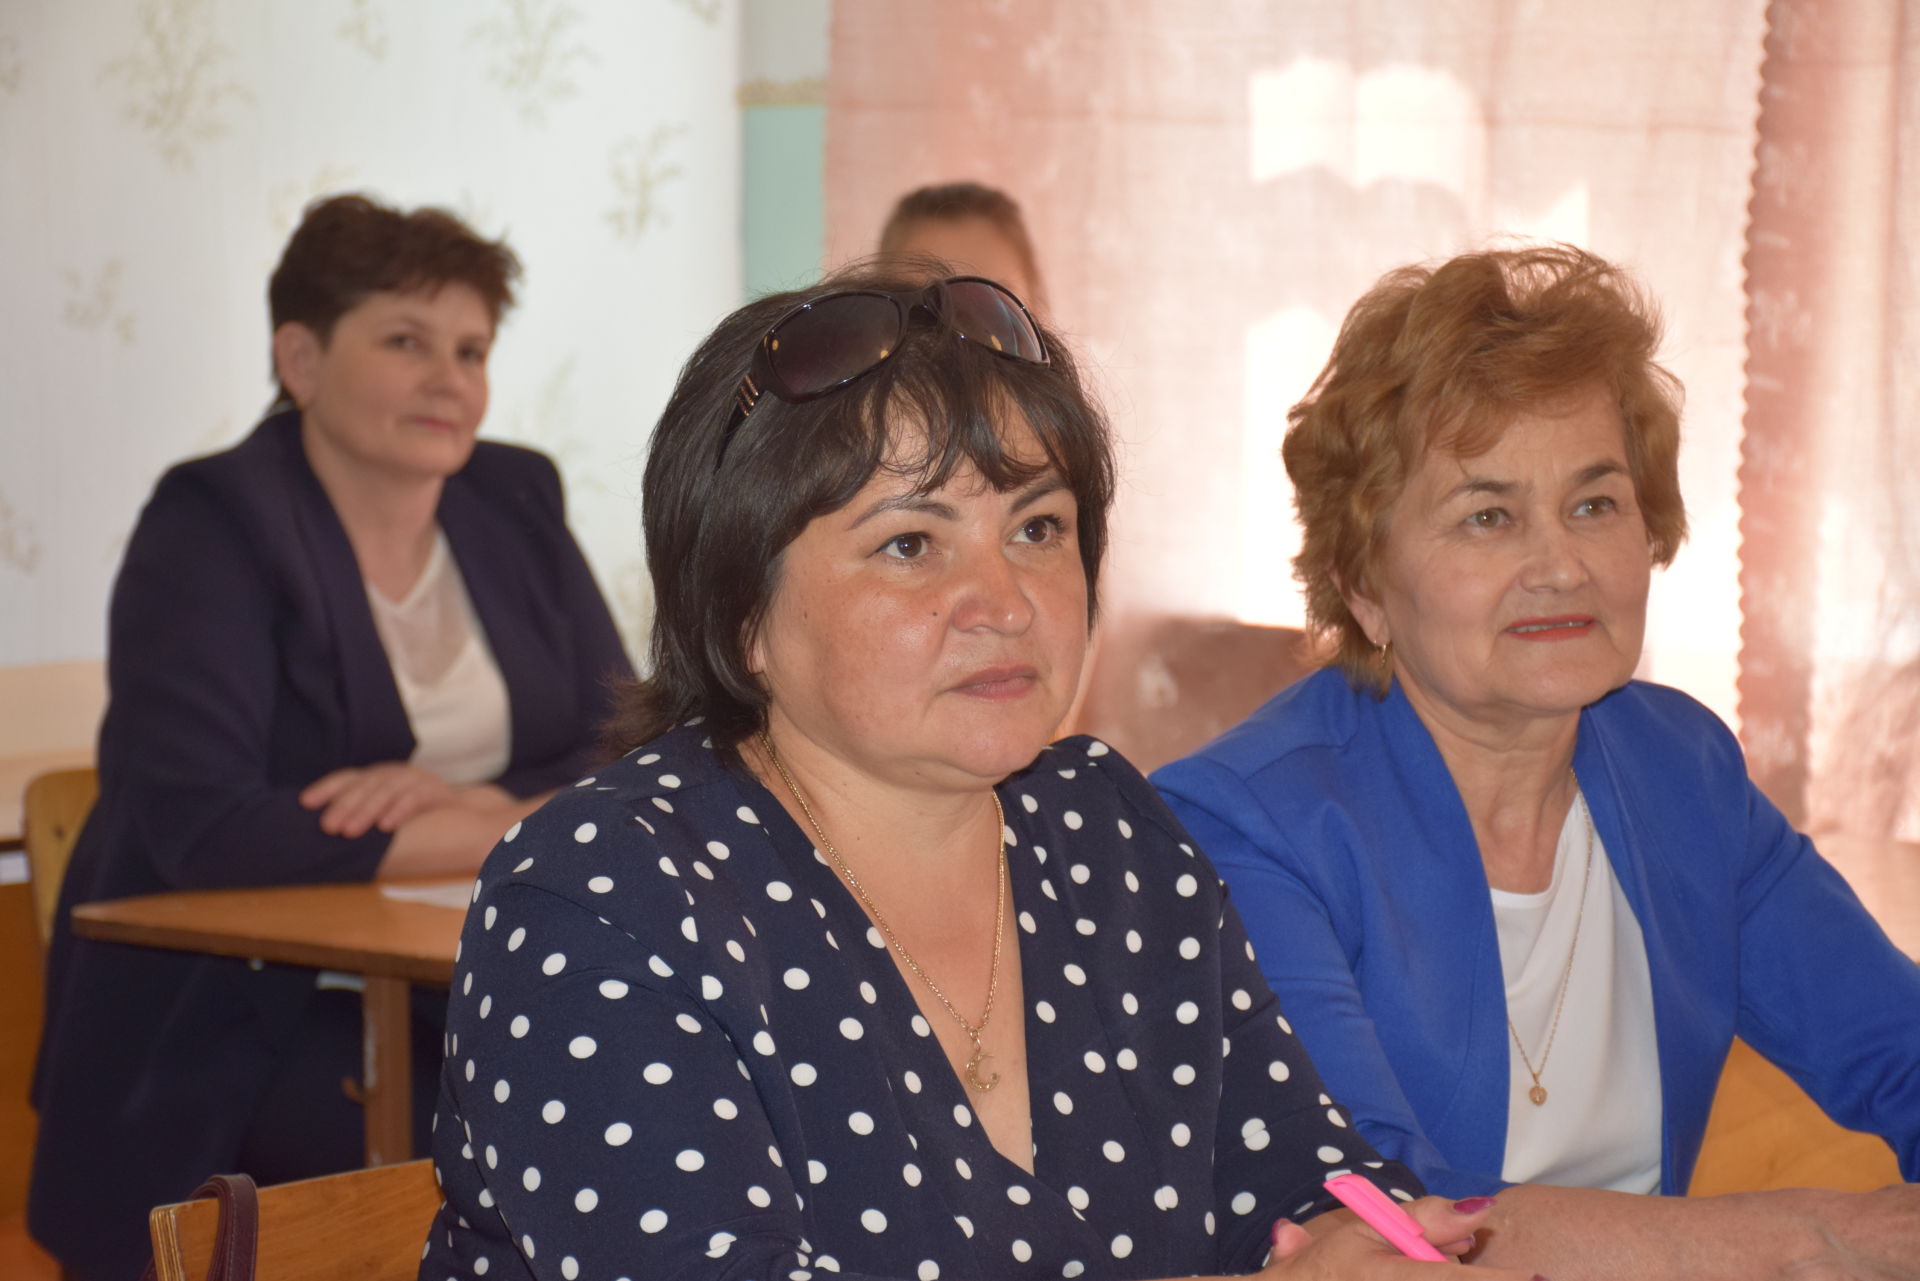 На родине Габдуллы Кариева прошли памятные мероприятия по случаю его 135-летия